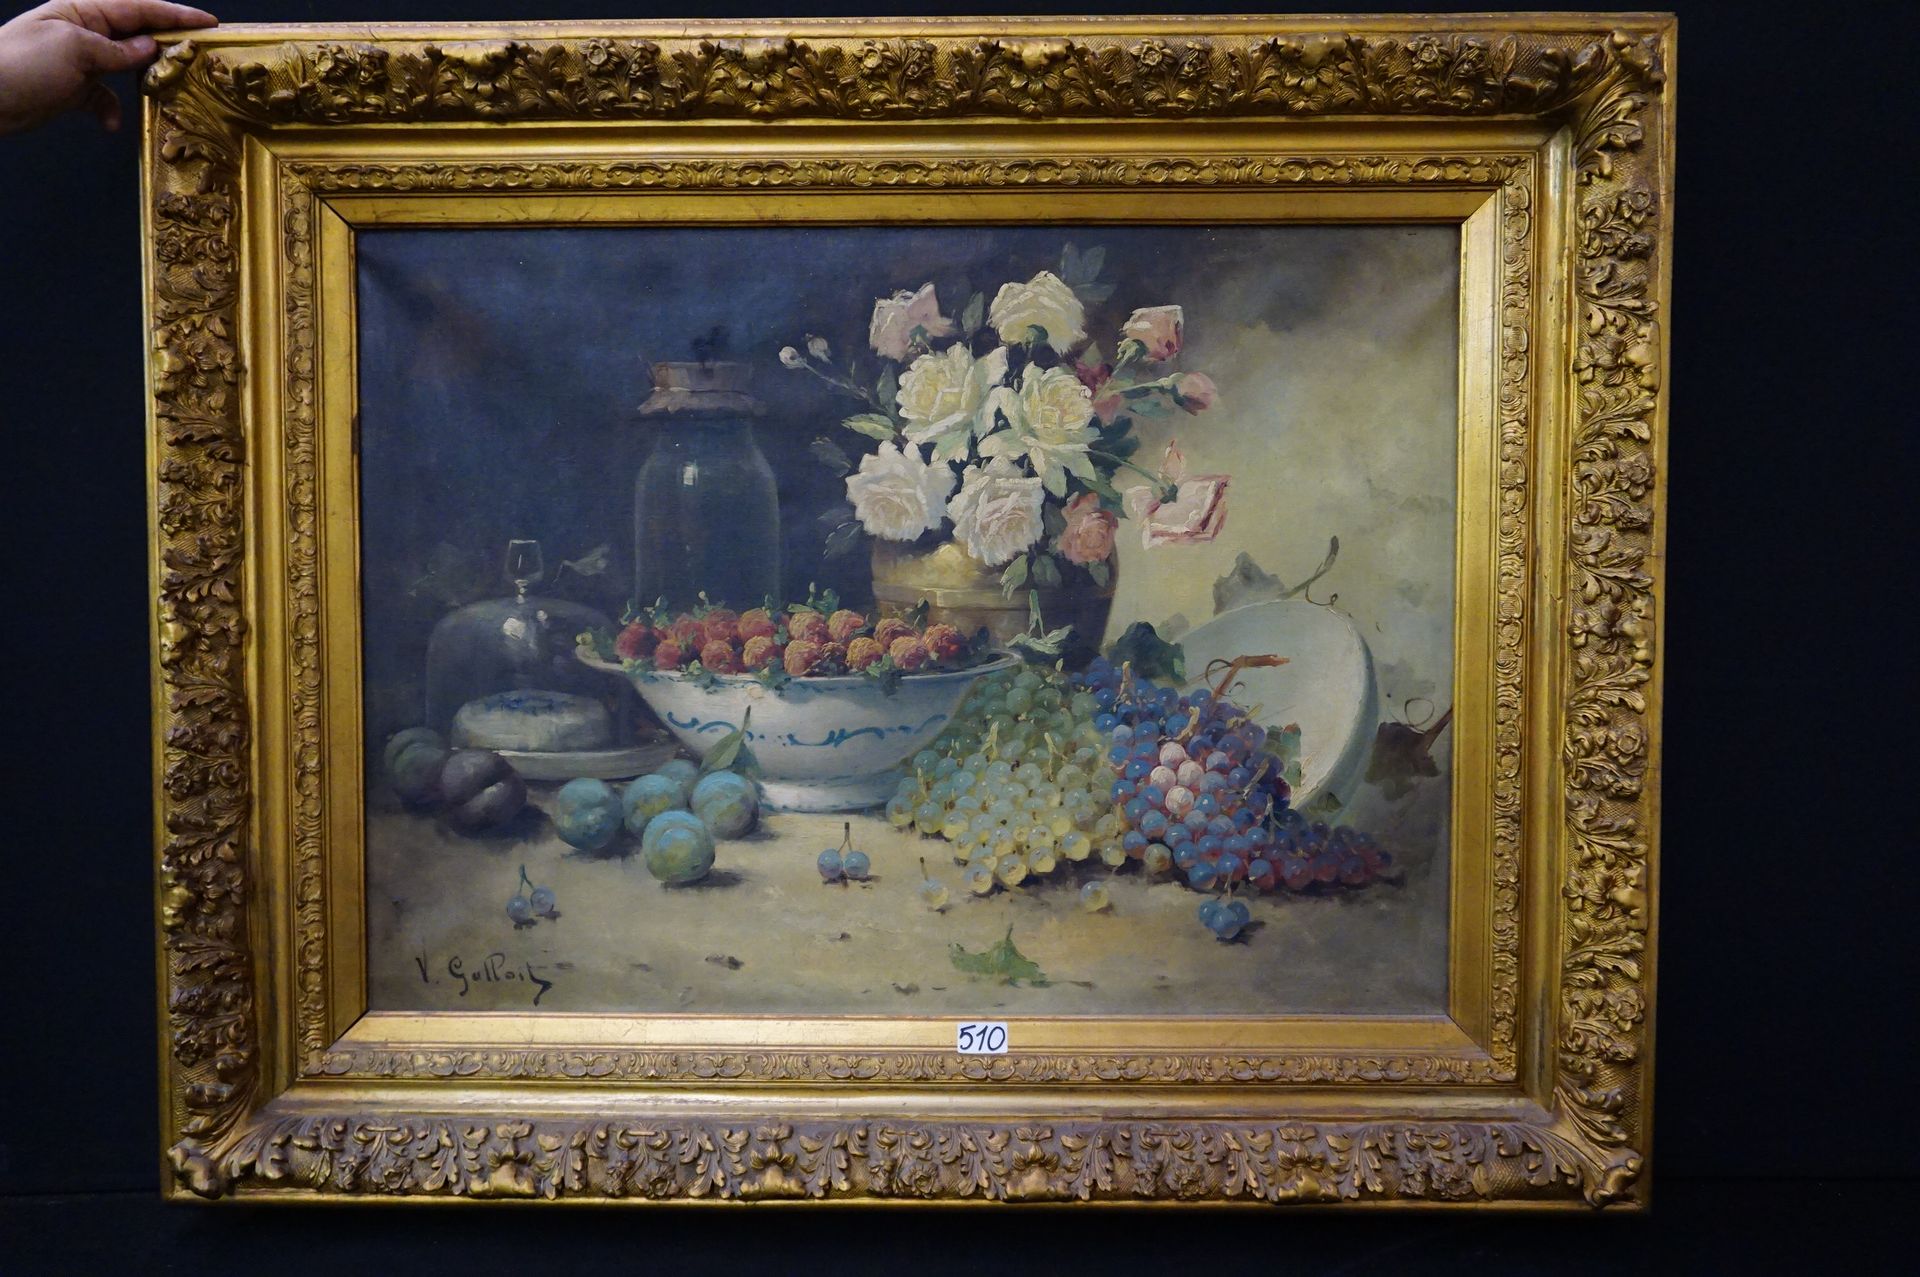 V. GALLOIT "玫瑰和水果的静物" - 布面油画 - 签名 - 美丽的框架 - 65 x 90 cm